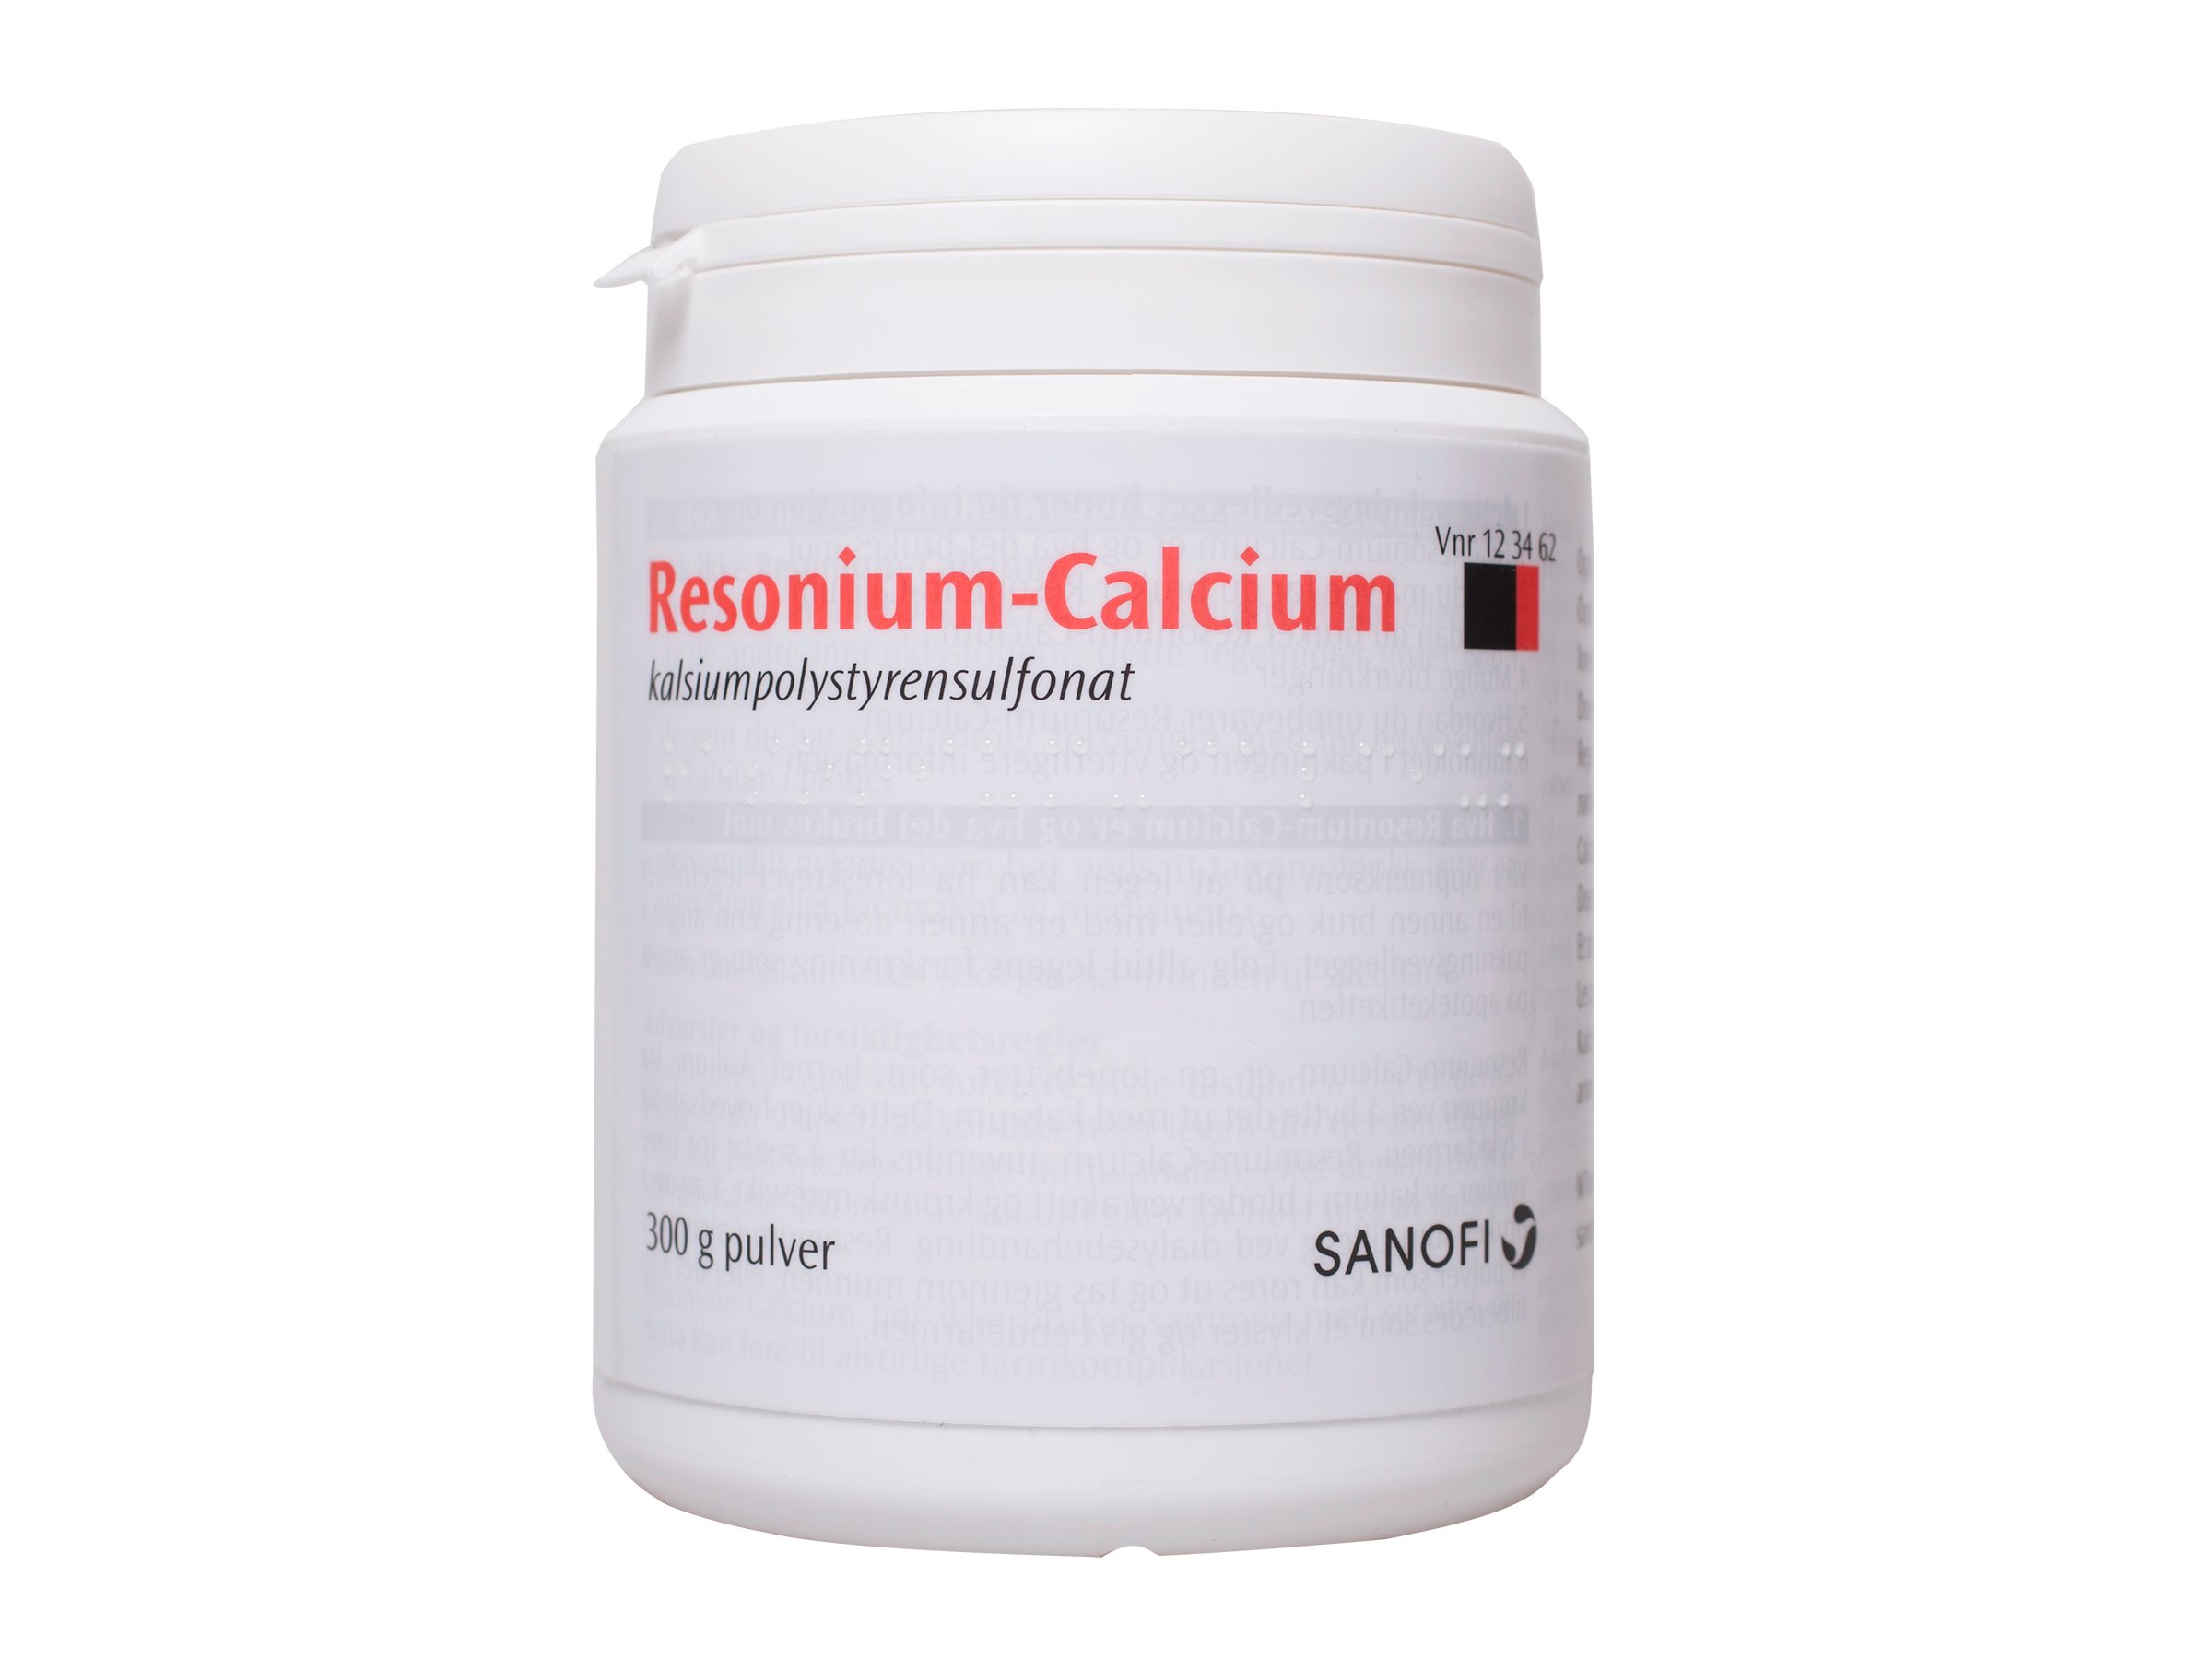 Resonius-Calcium Resonium-Calcium pulver, 300 g.